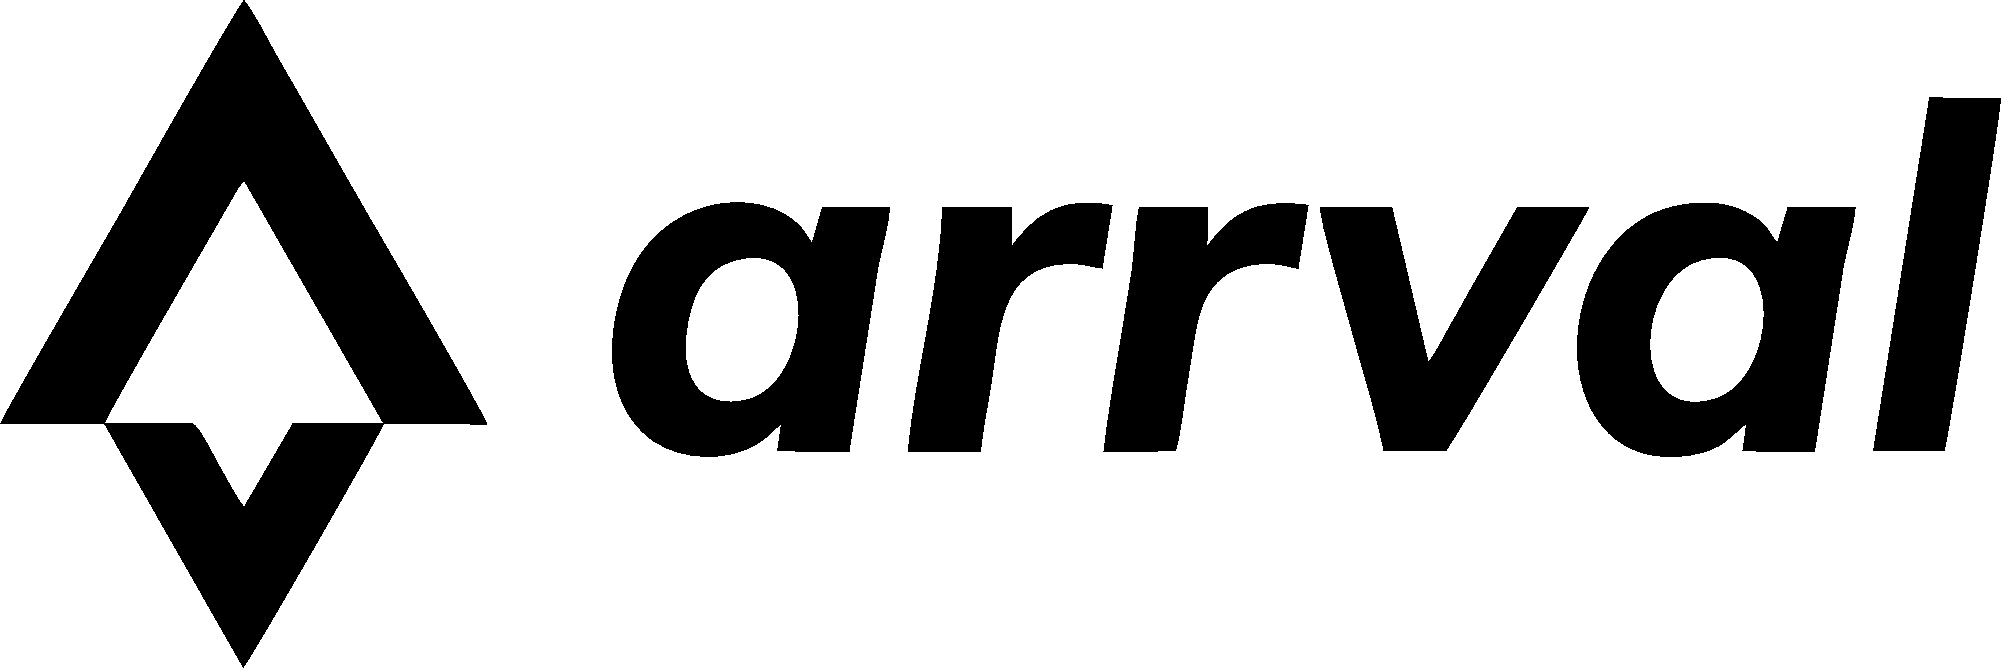 logo Arrval